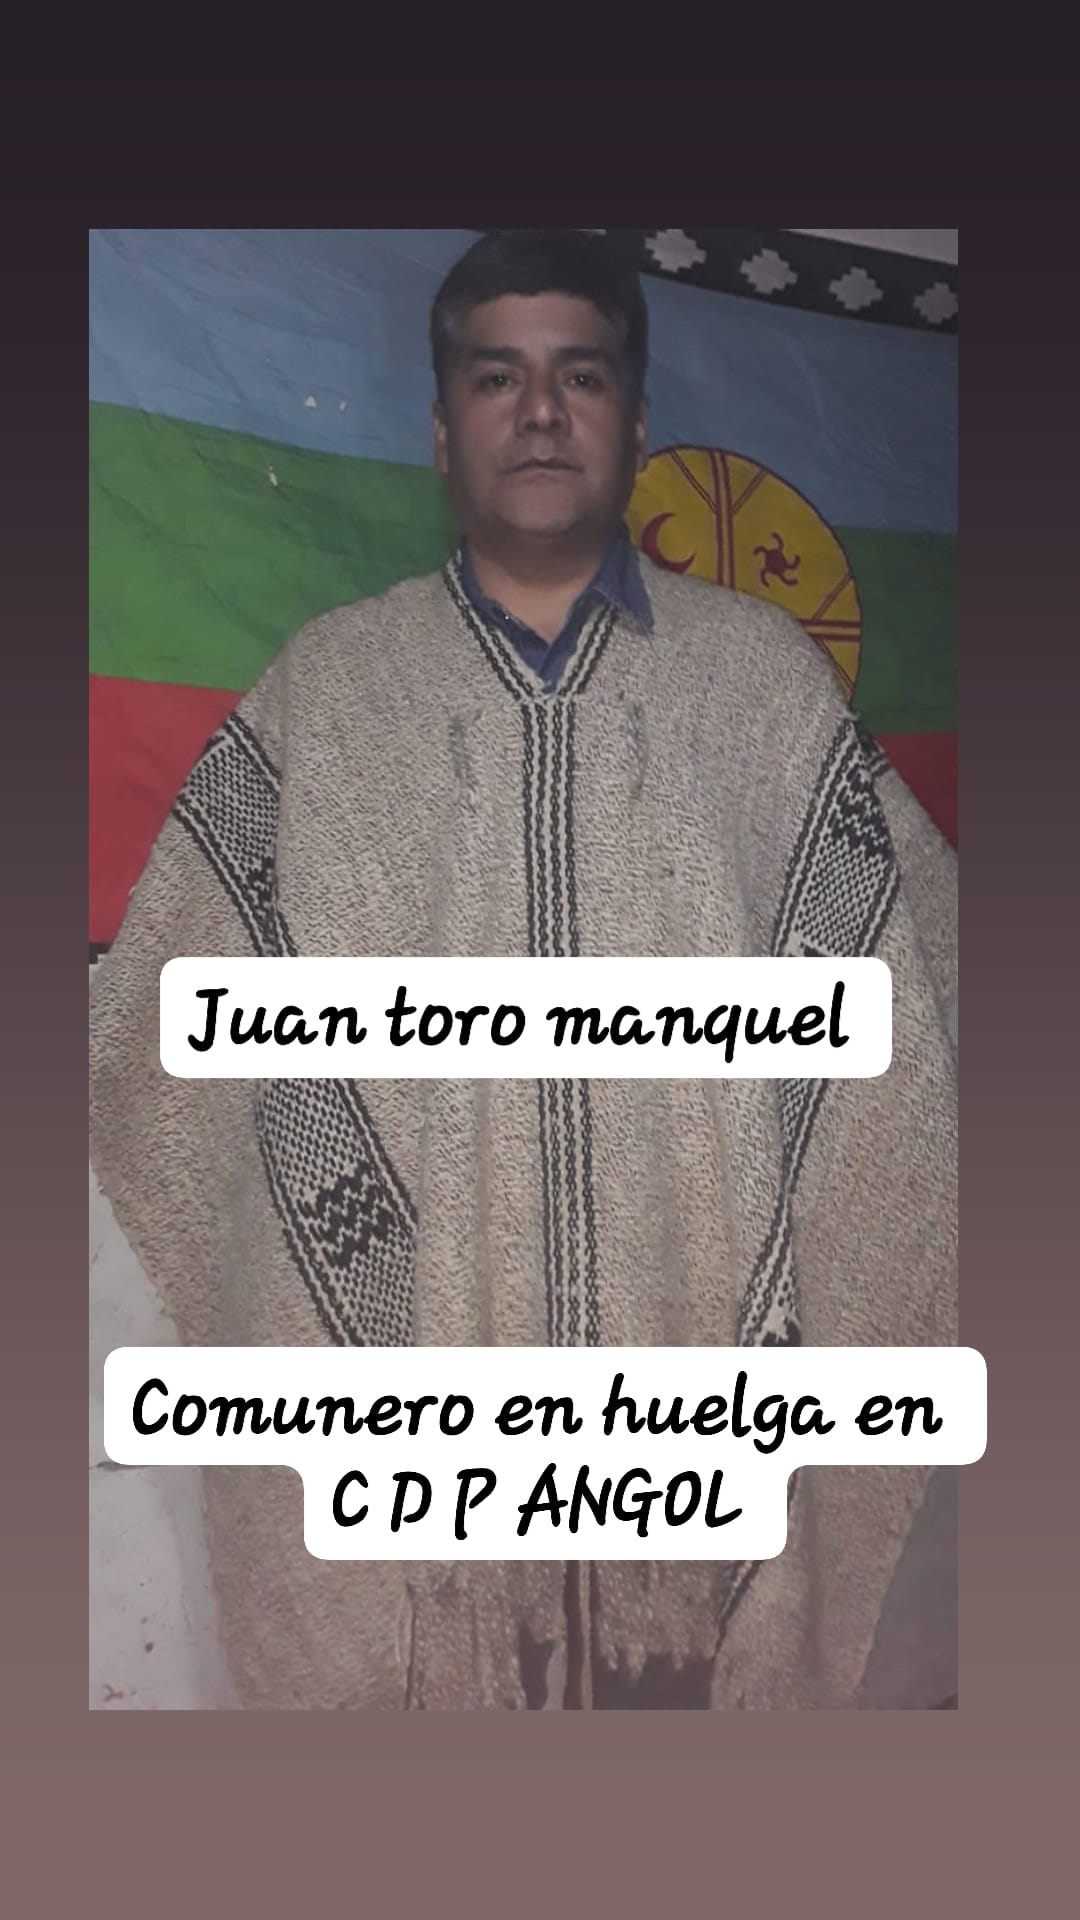 Puede ser una imagen de 1 persona, de pie y texto que dice "Juan toro manquel Comunero en huelga en CDP ANGOL"